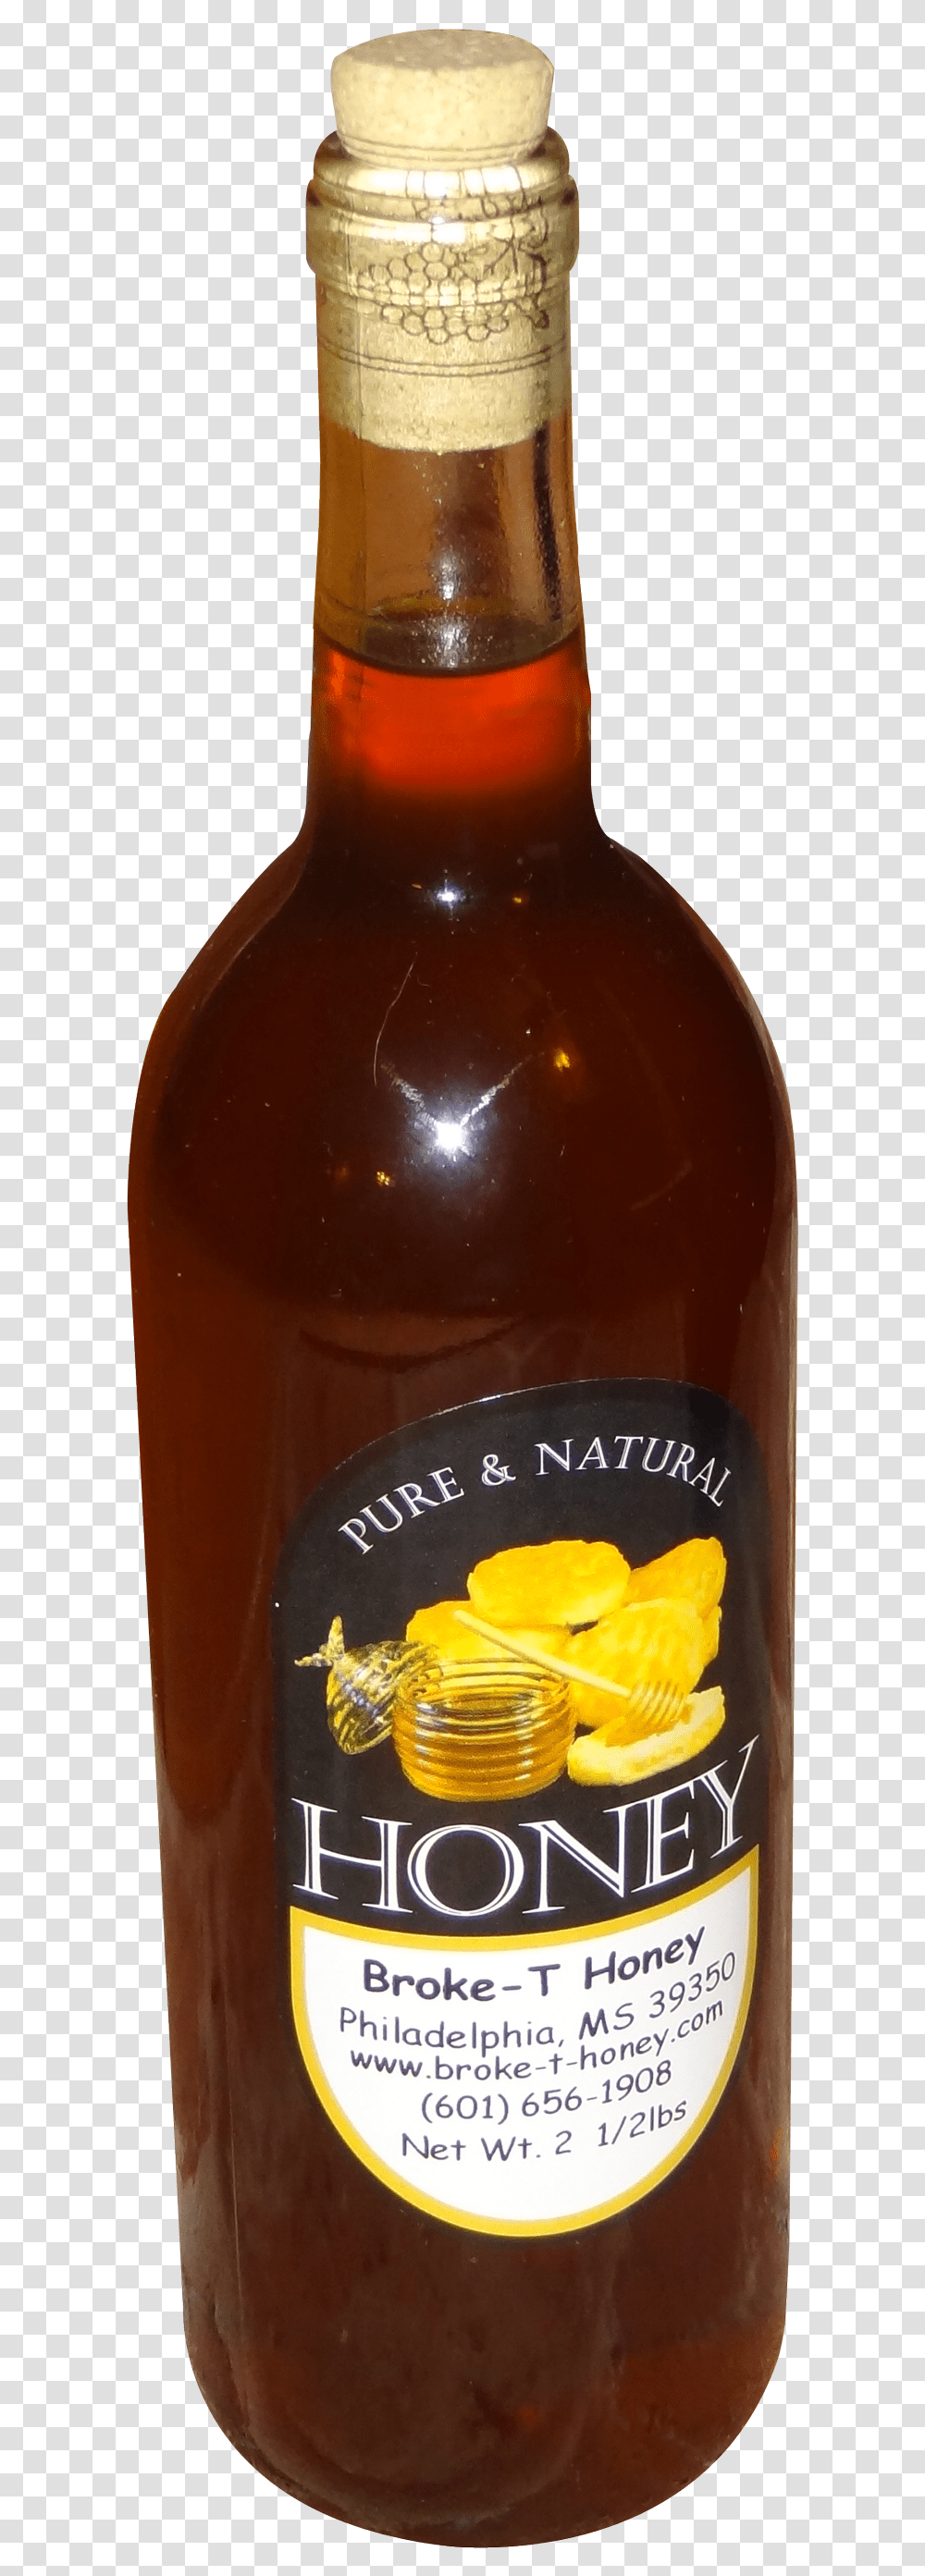 Honey Bottle Image Punsch, Beer, Alcohol, Beverage, Drink Transparent Png